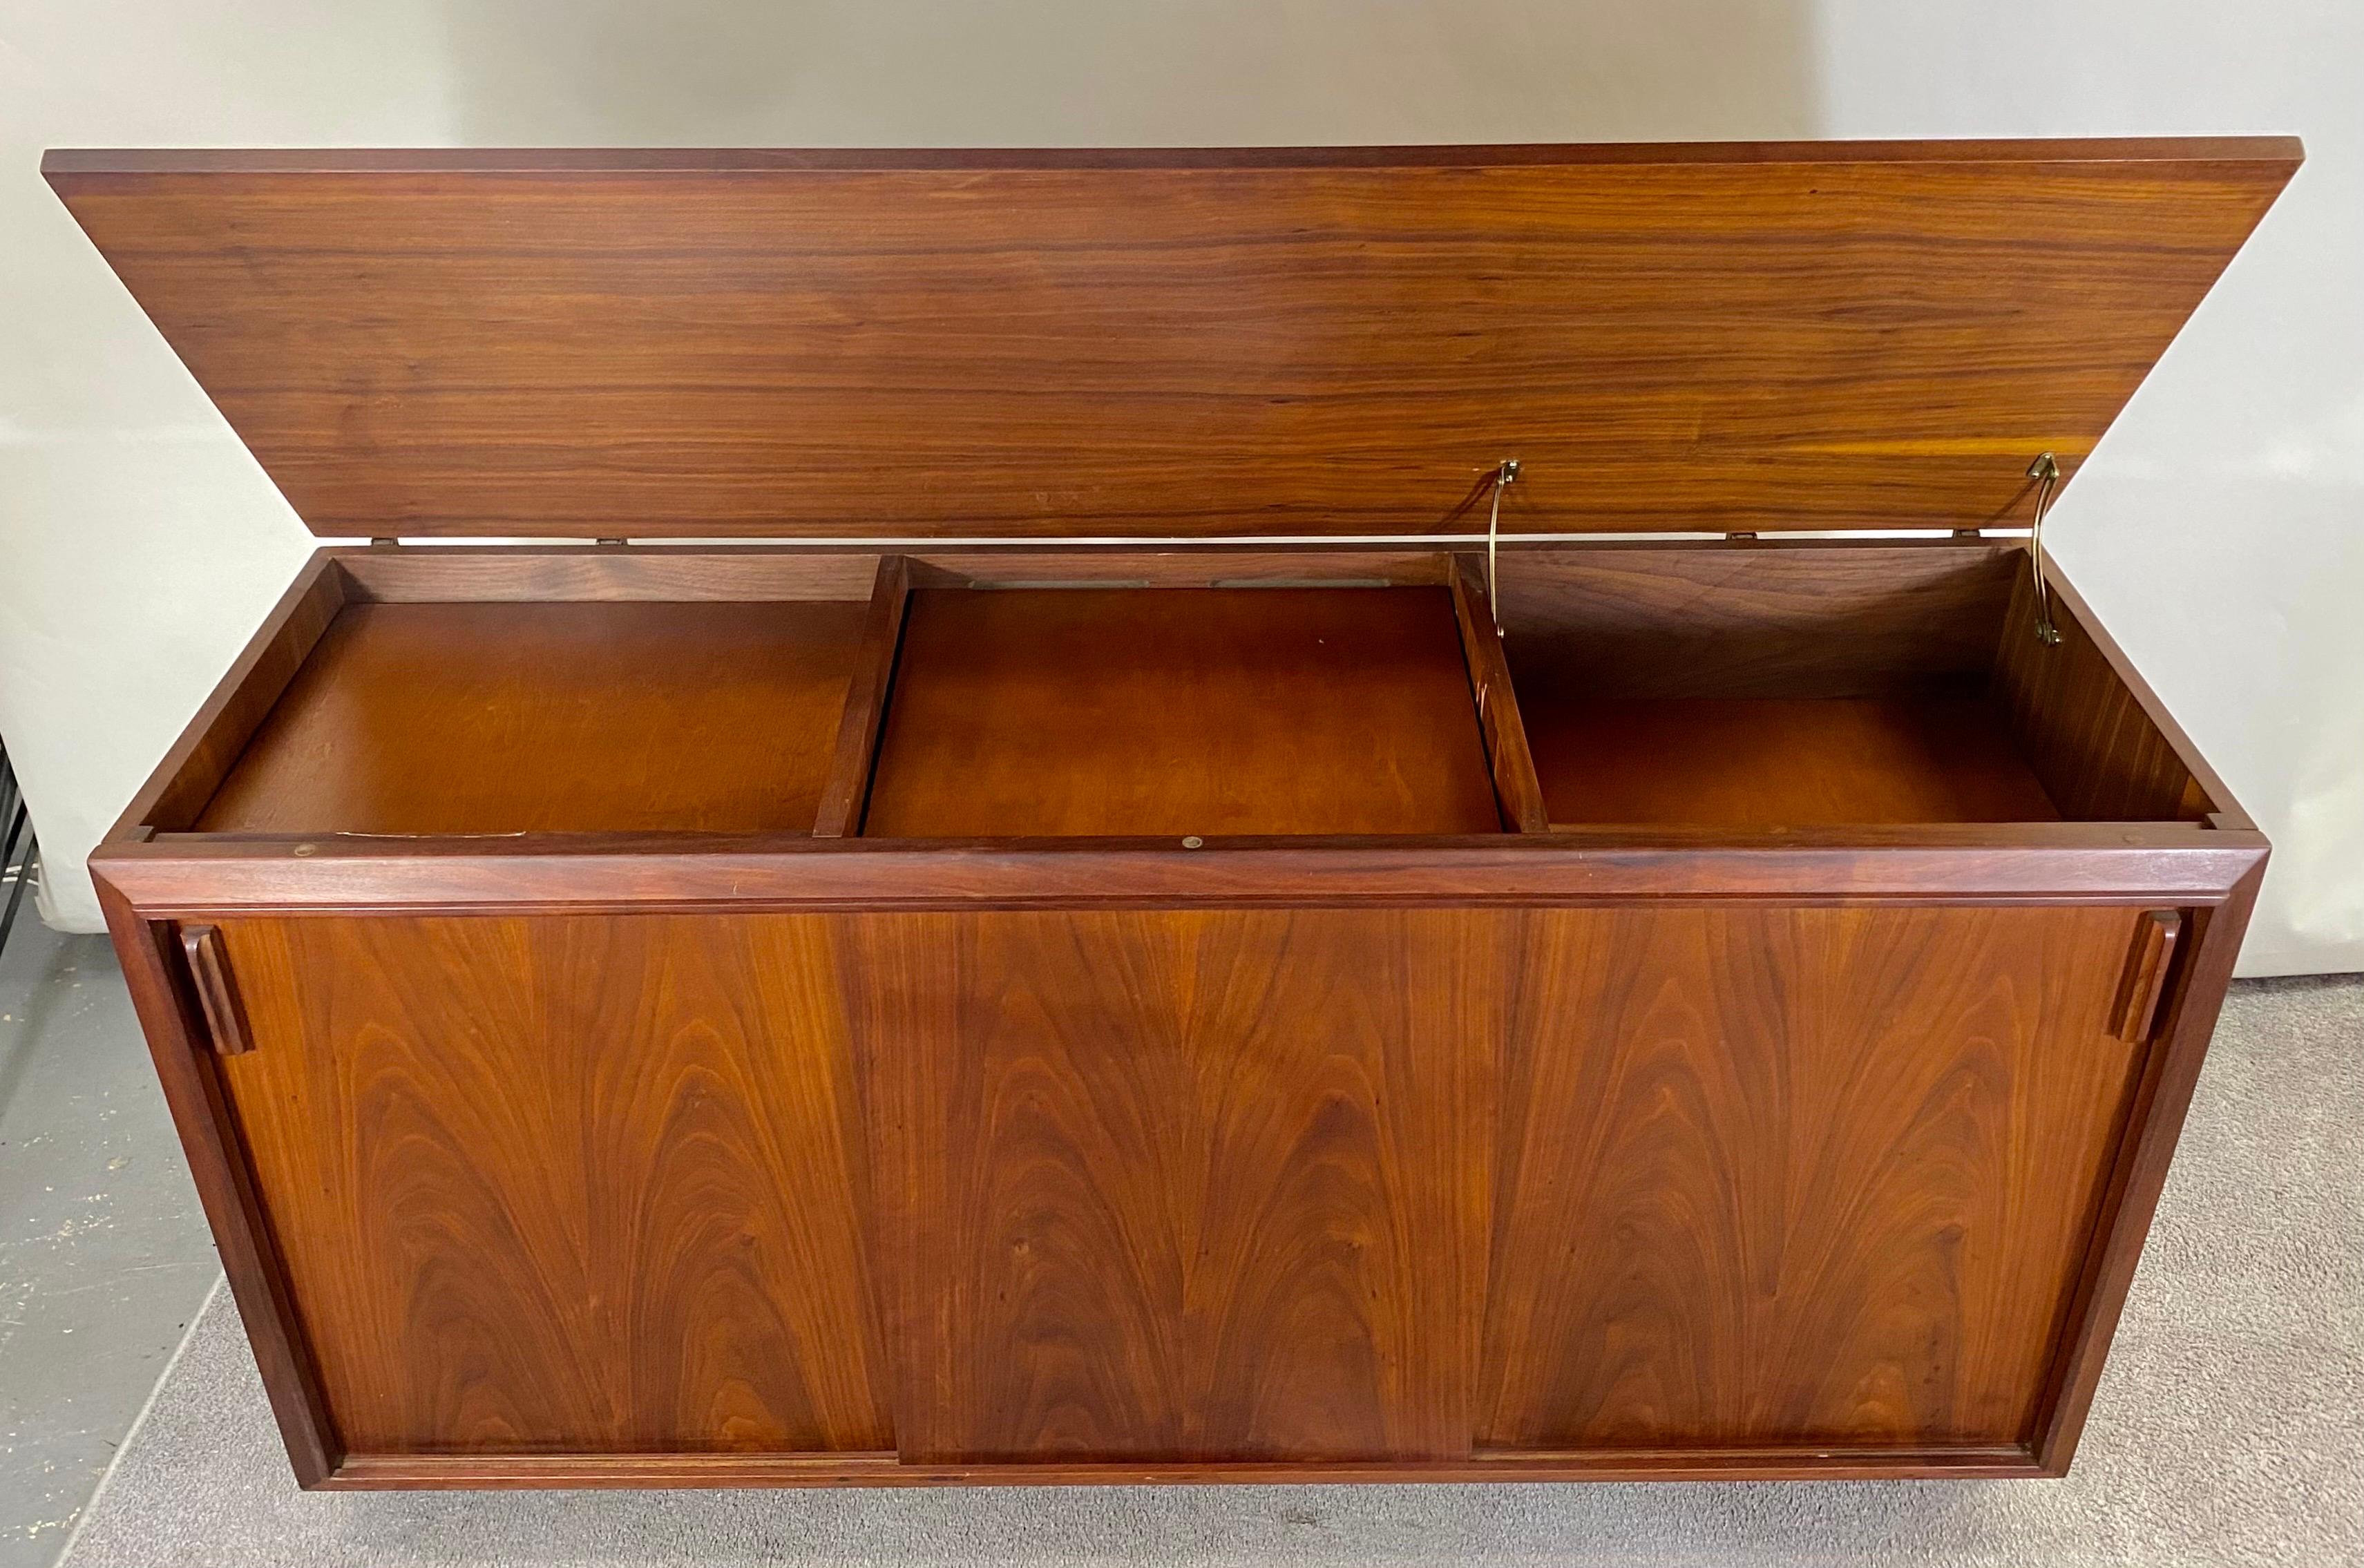 Buffet et crédence de qualité, de style moderne du milieu du siècle, de Brazilay. Le beau meuble était à l'origine une console stéréo et a été transformé en buffet. Le buffet Brazilay dispose de trois espaces de rangement. La partie supérieure, une